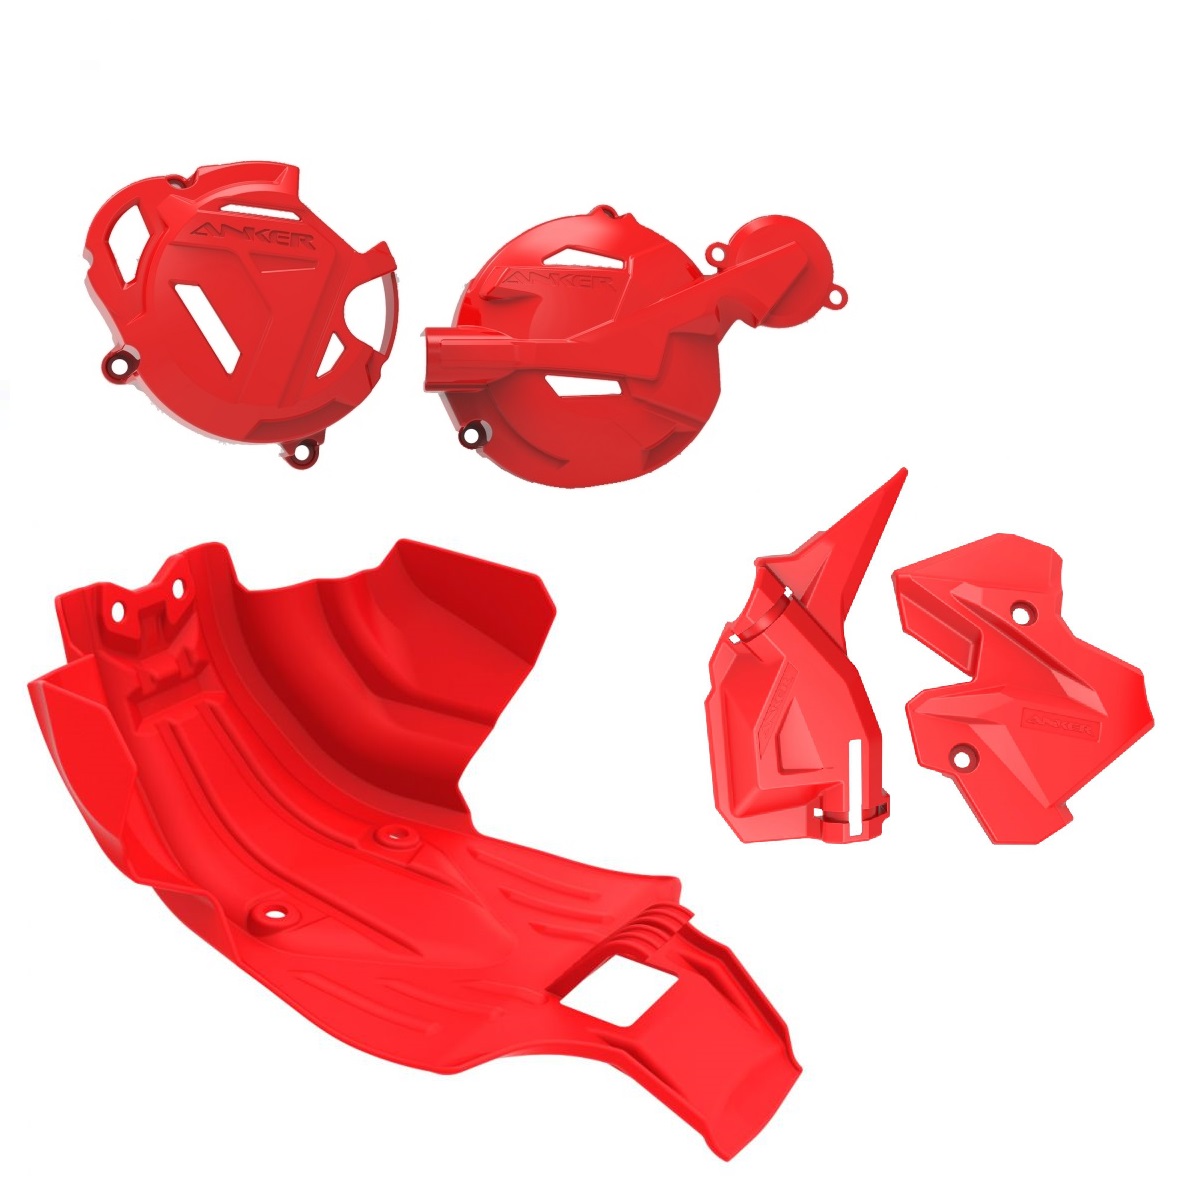 Kit Protetores Anker CRF250F Motor + Tampas + Quadro Vermelho